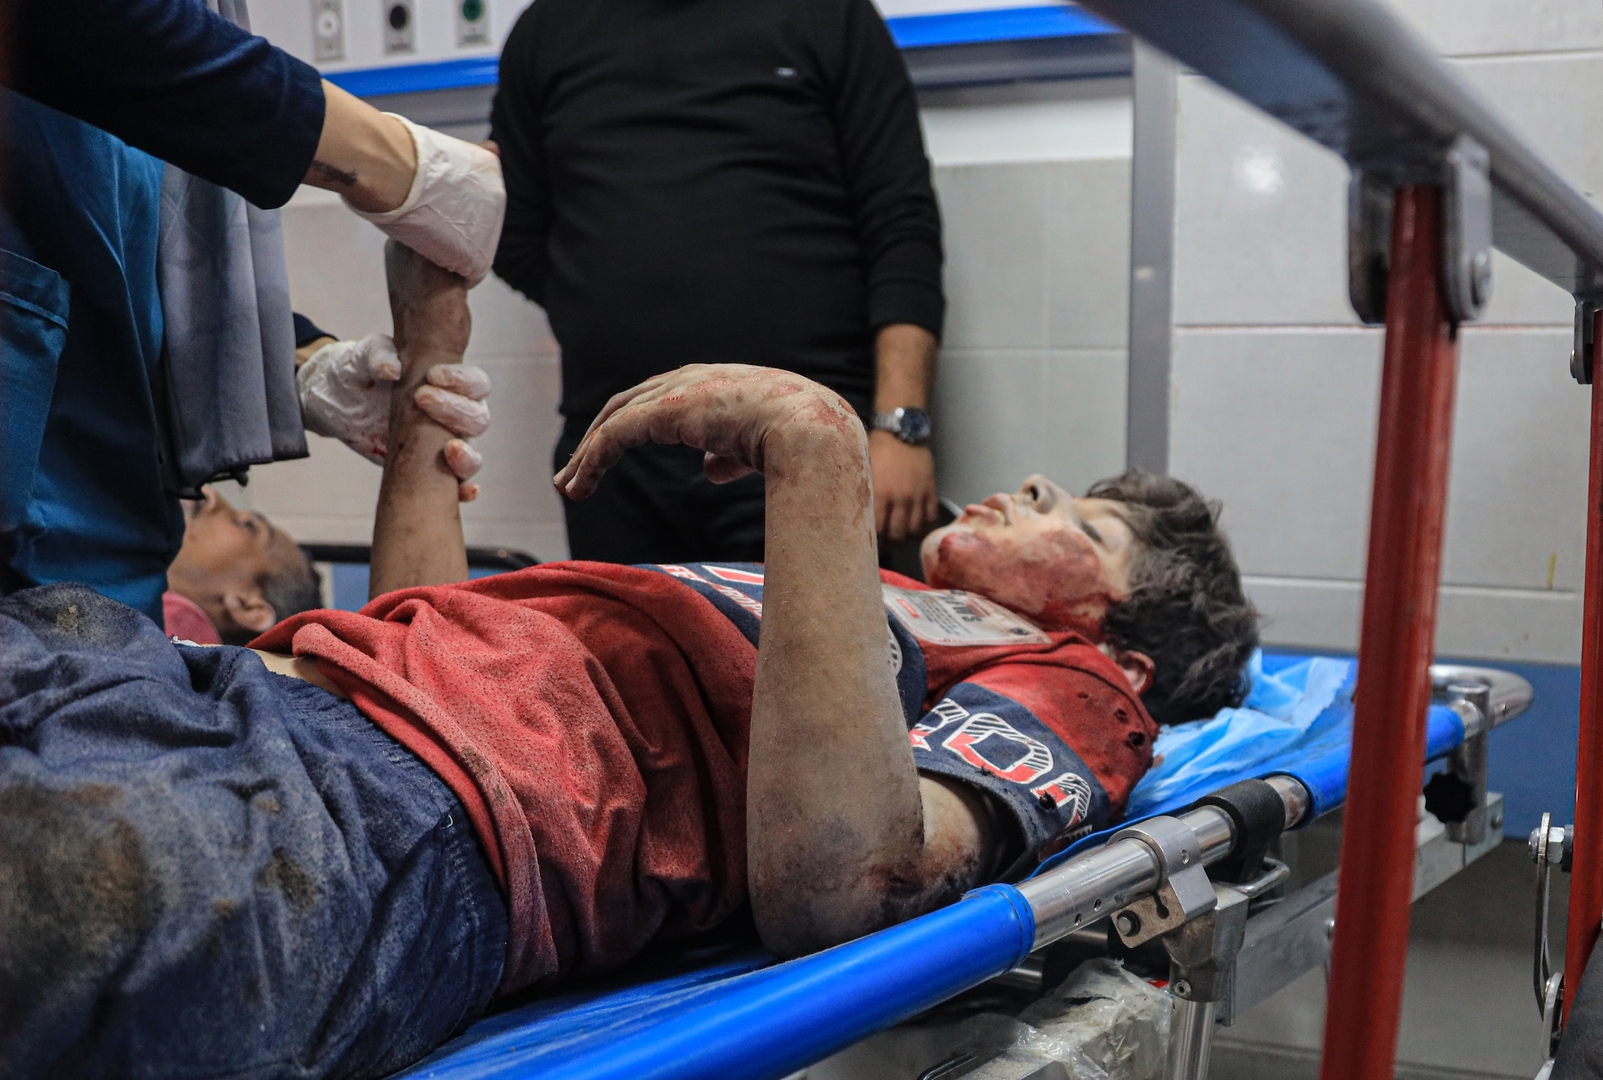 شاهد عيان يروي تفاصيل قصف مستشفى المعمداني في غزة (فيديو)